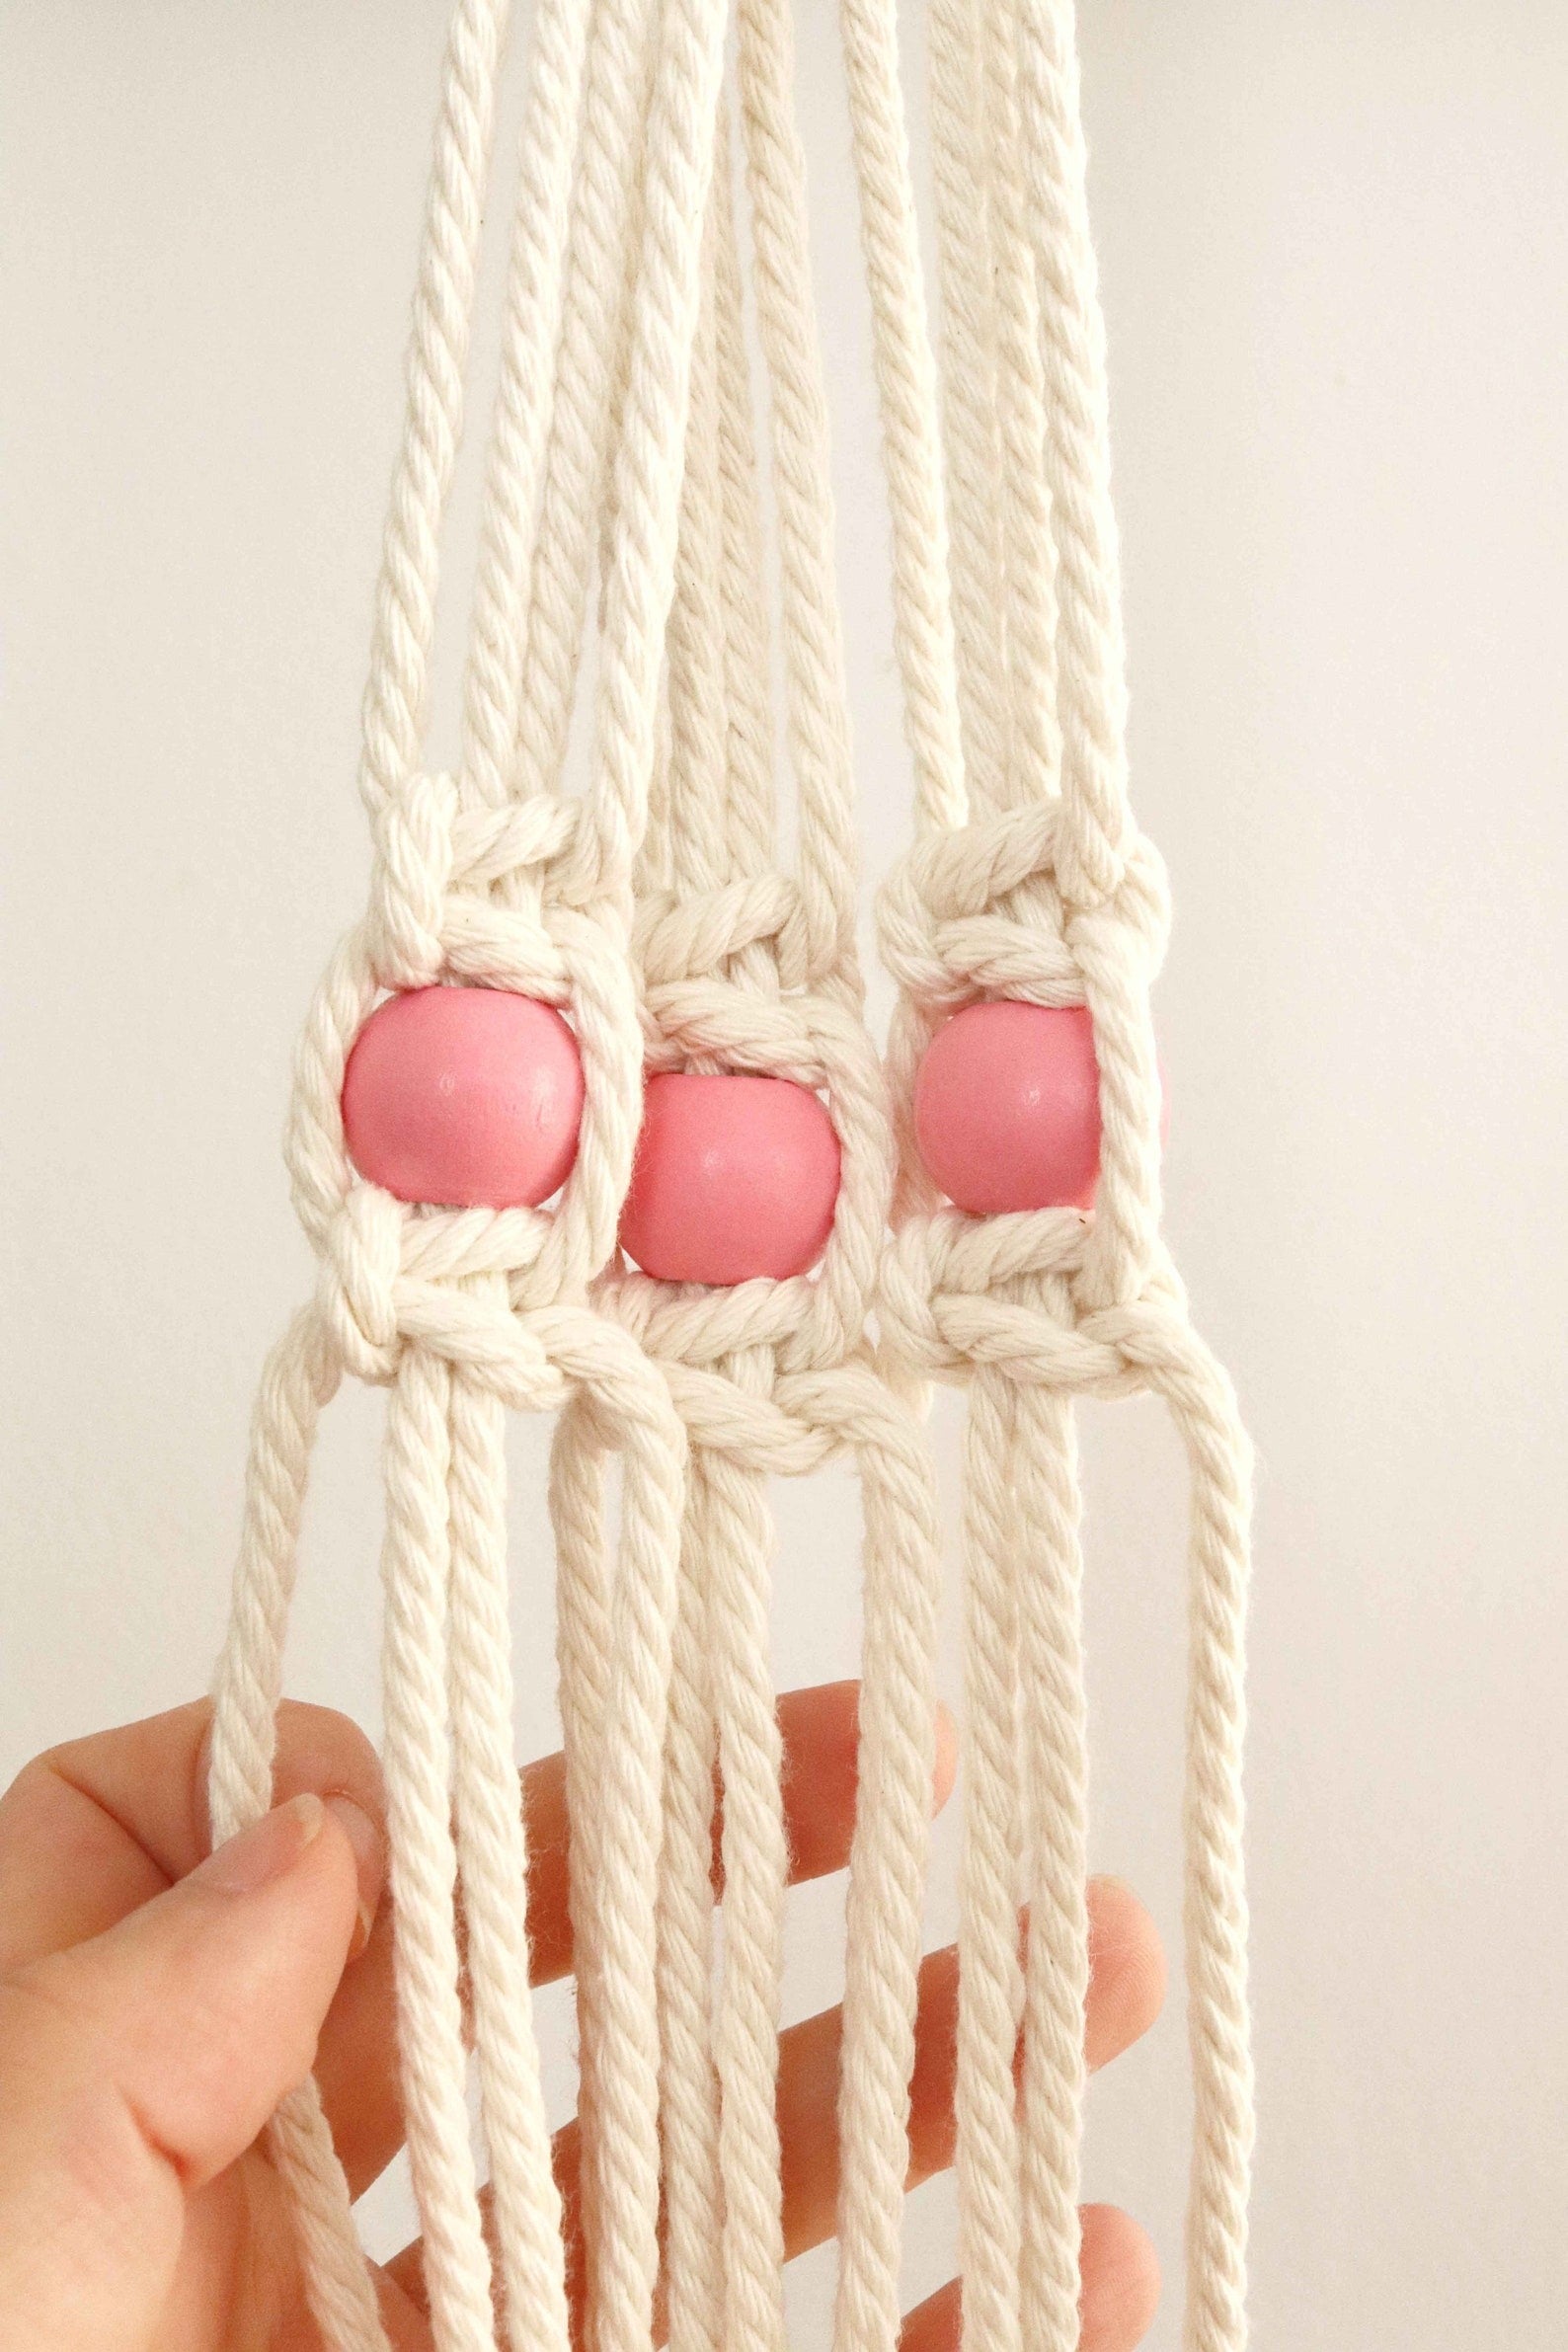 macrame large hole beads on cotton rope